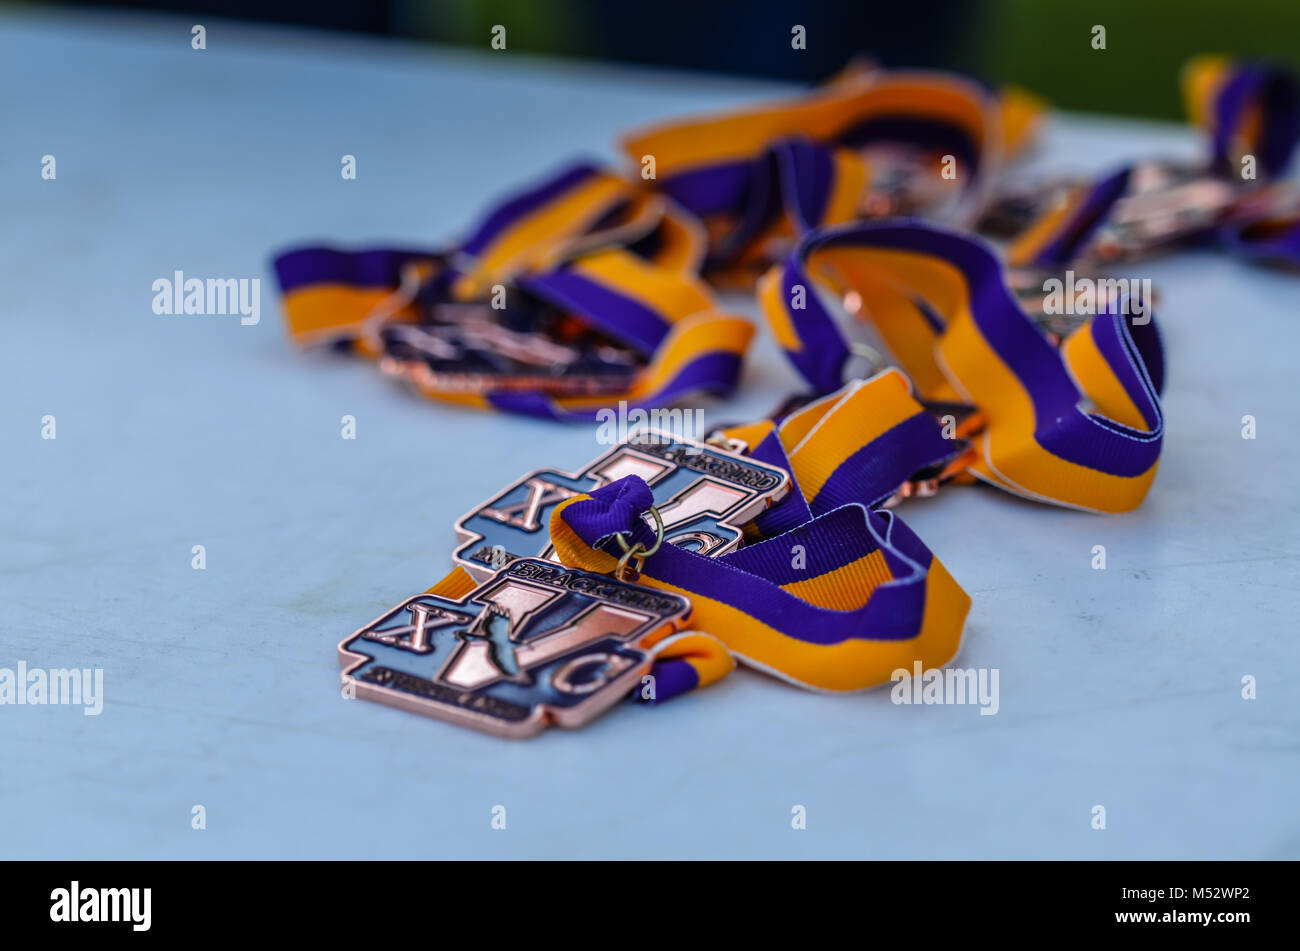 Bronze cross country medaglie in viola e oro nastri. Foto Stock